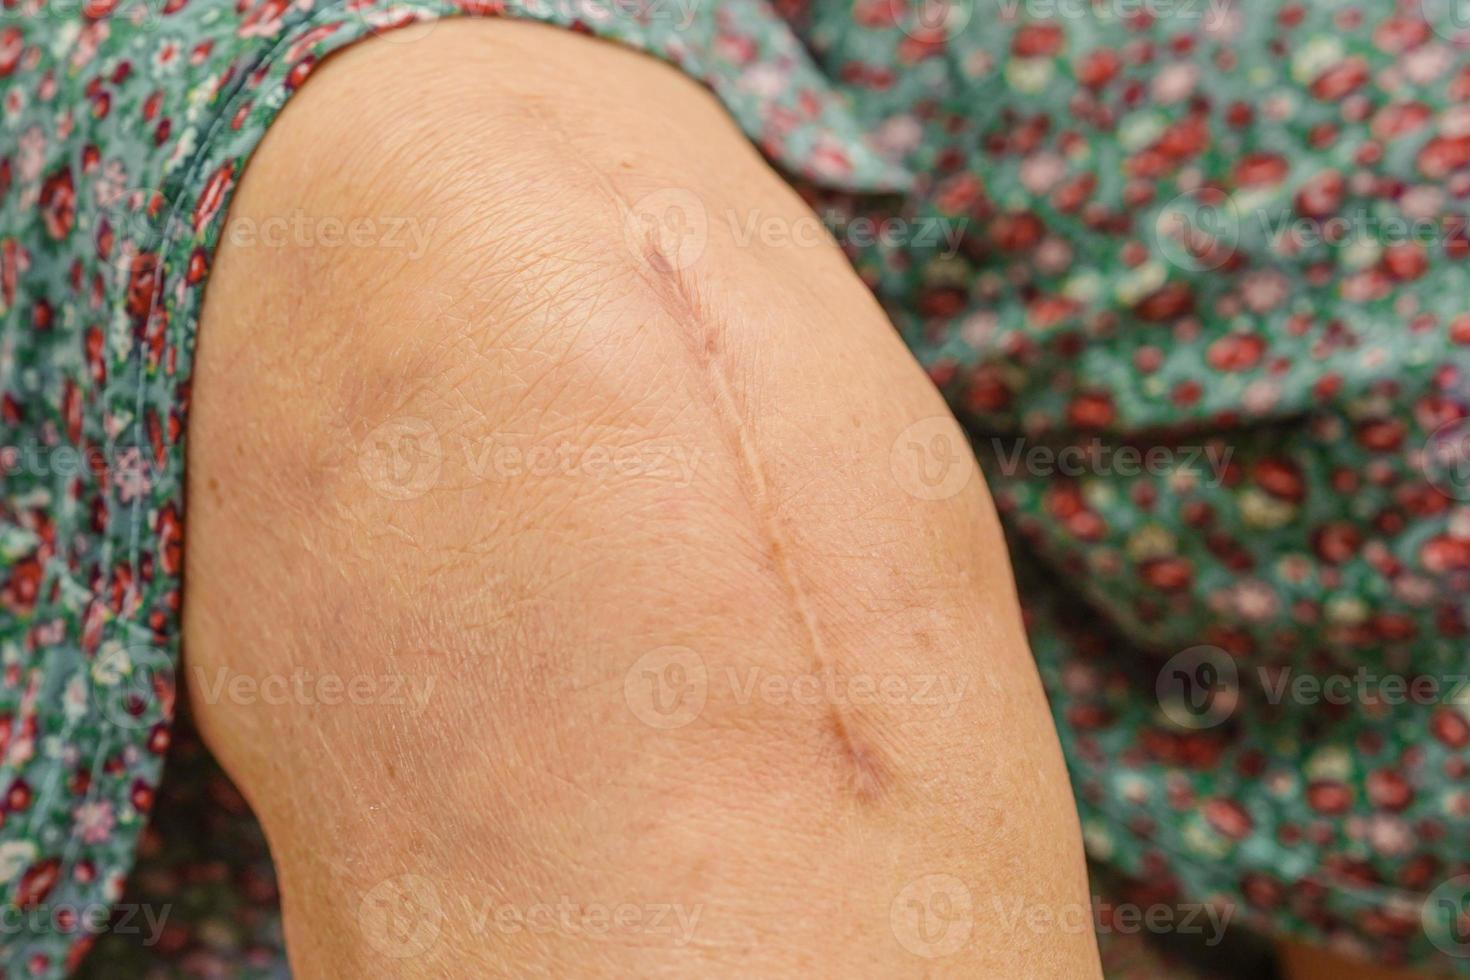 Aziatische oudere vrouw patiënt met litteken knie vervangende operatie in het ziekenhuis. foto